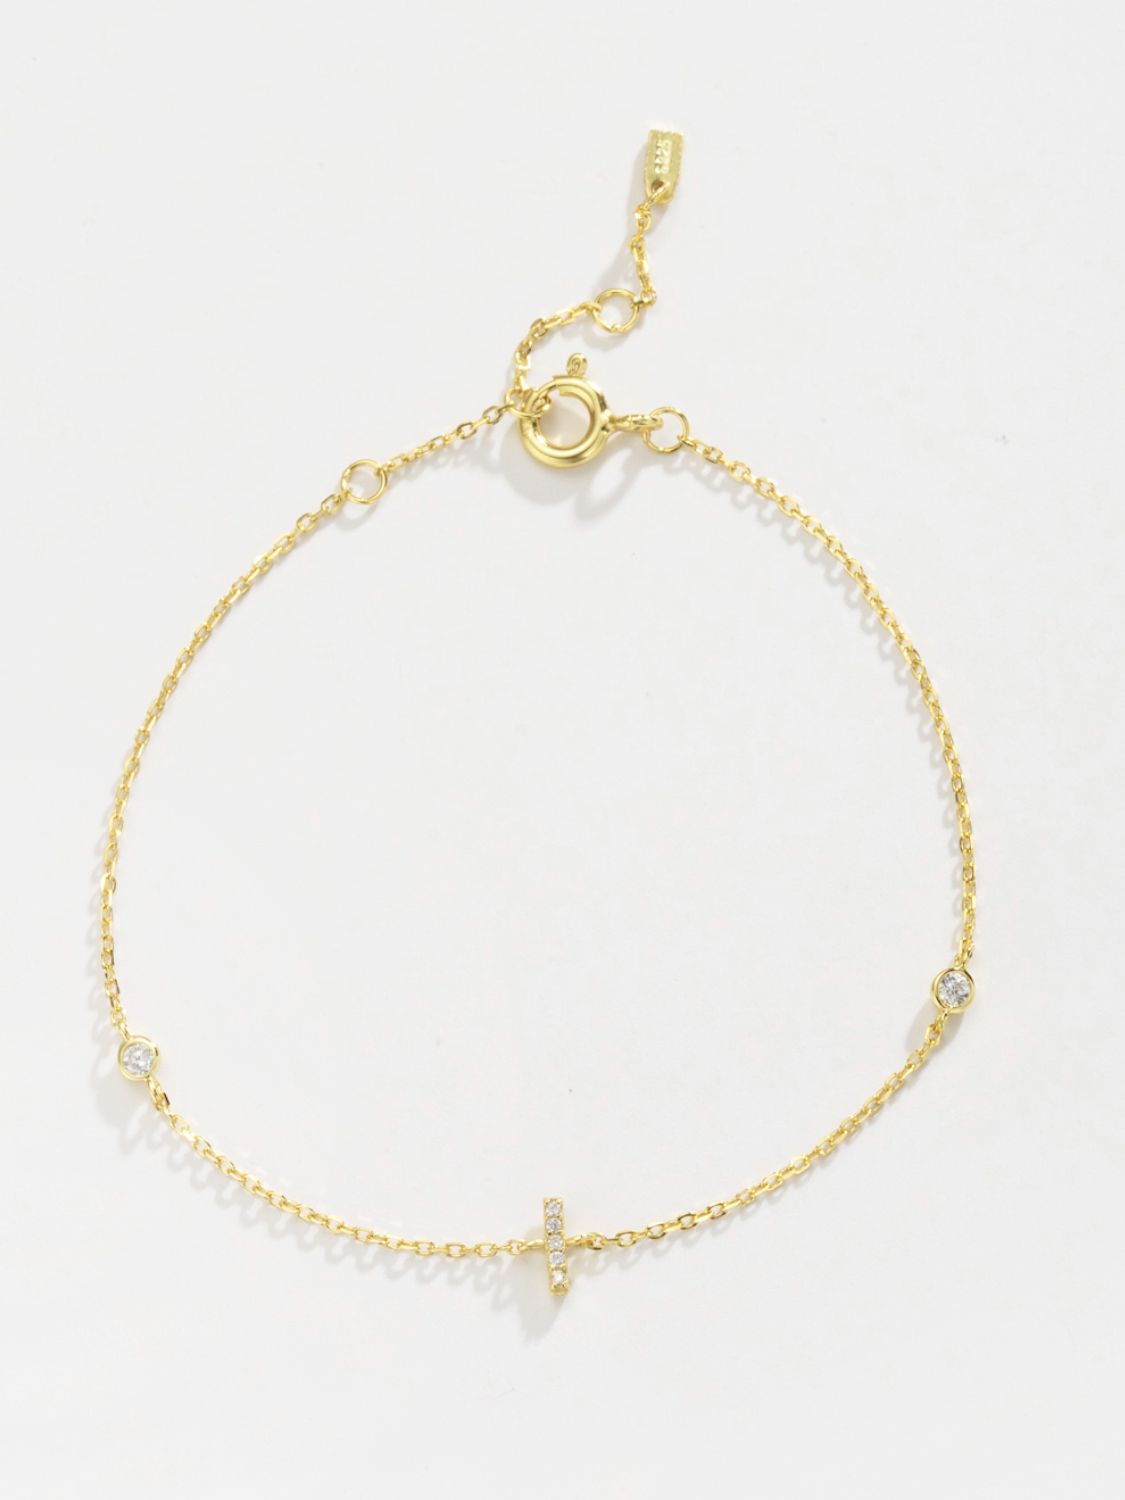 Zircon 925 Sterling Silver Bracelet - Women’s Jewelry - Bracelets - 14 - 2024